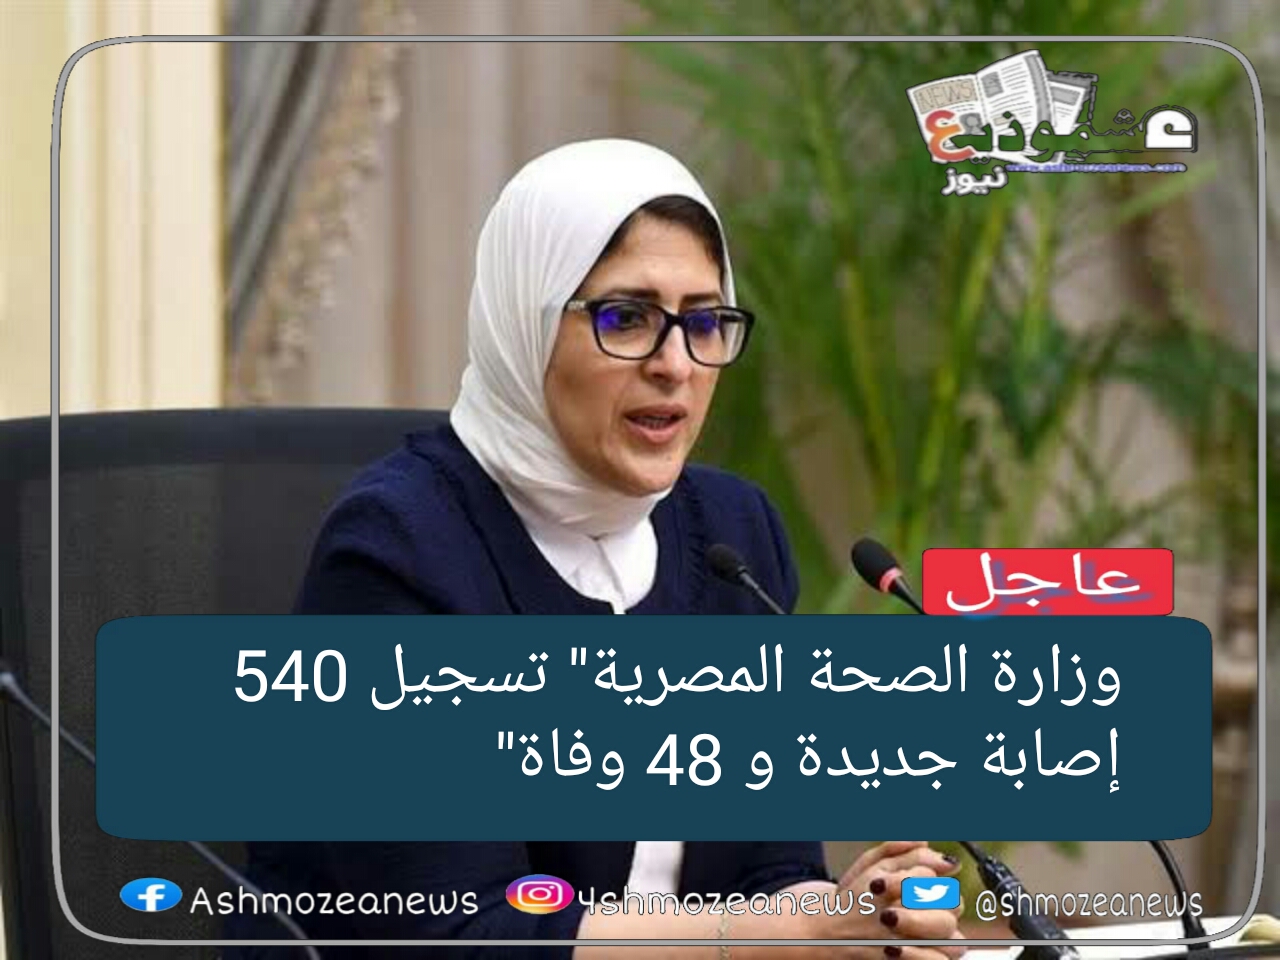 وزارة الصحة المصرية" تسجيل 540 إصابة جديدة و 48 وفاة" 